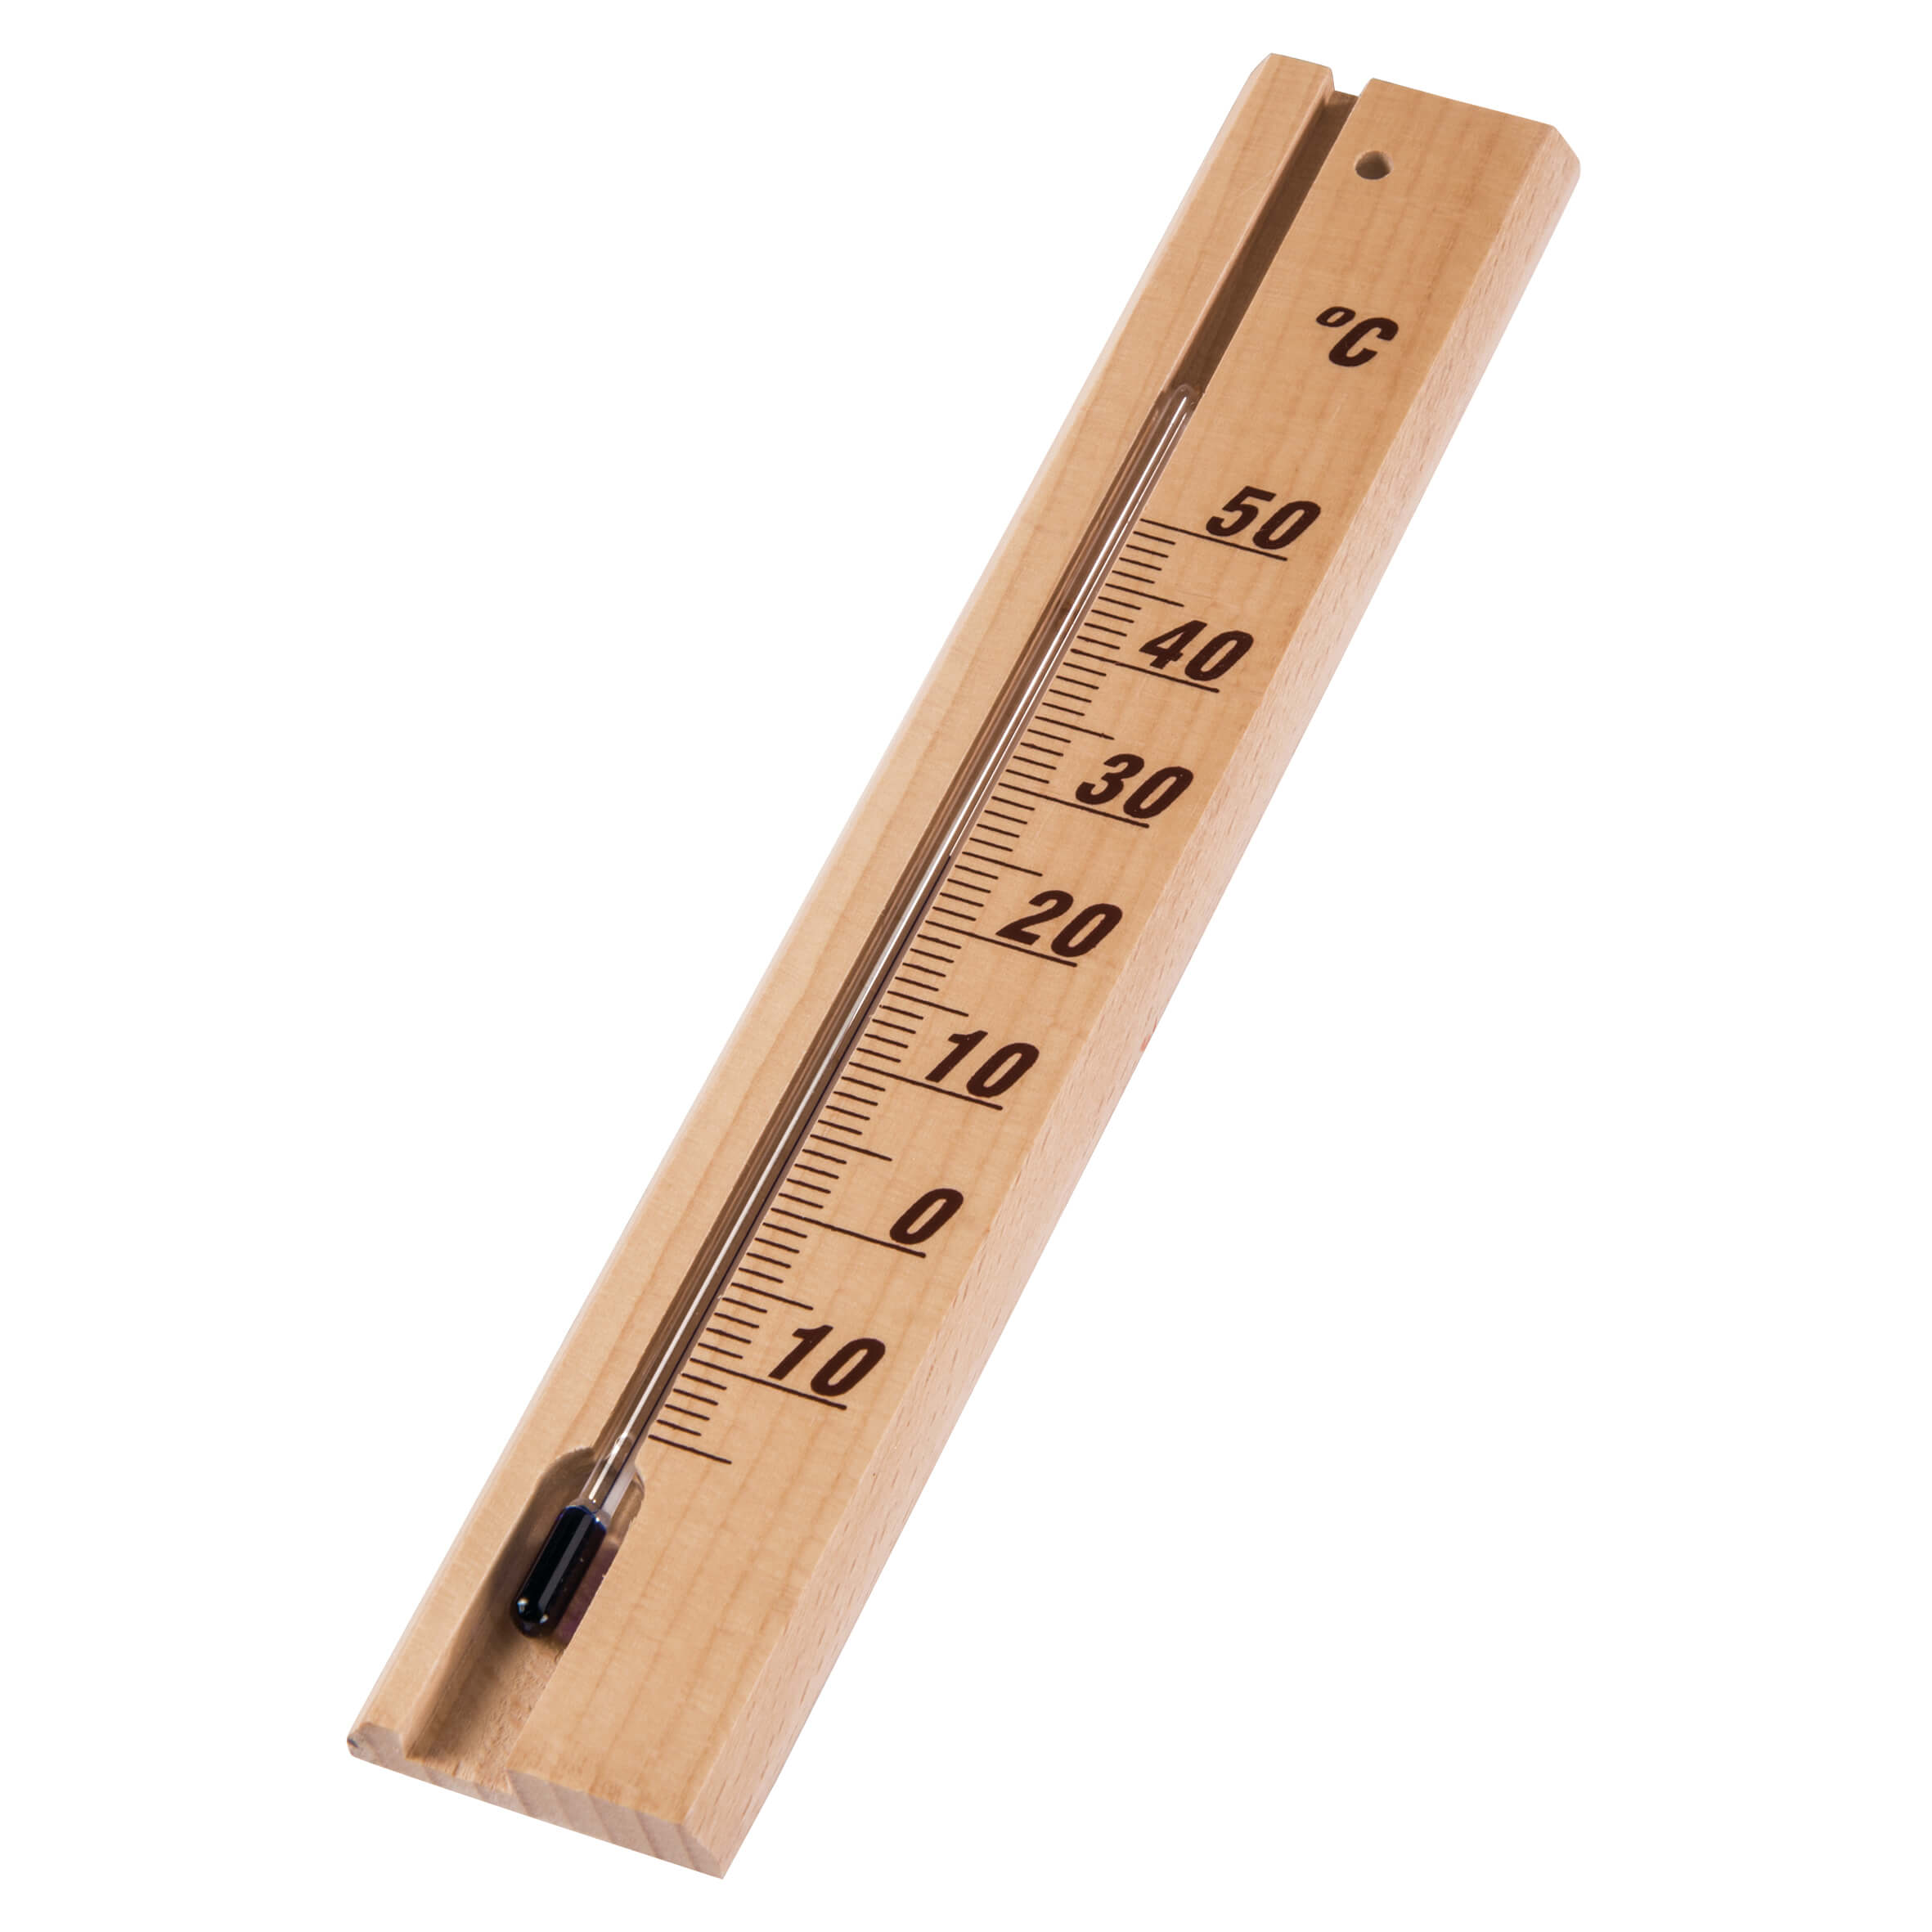 HAMA Thermometer Analog Wood